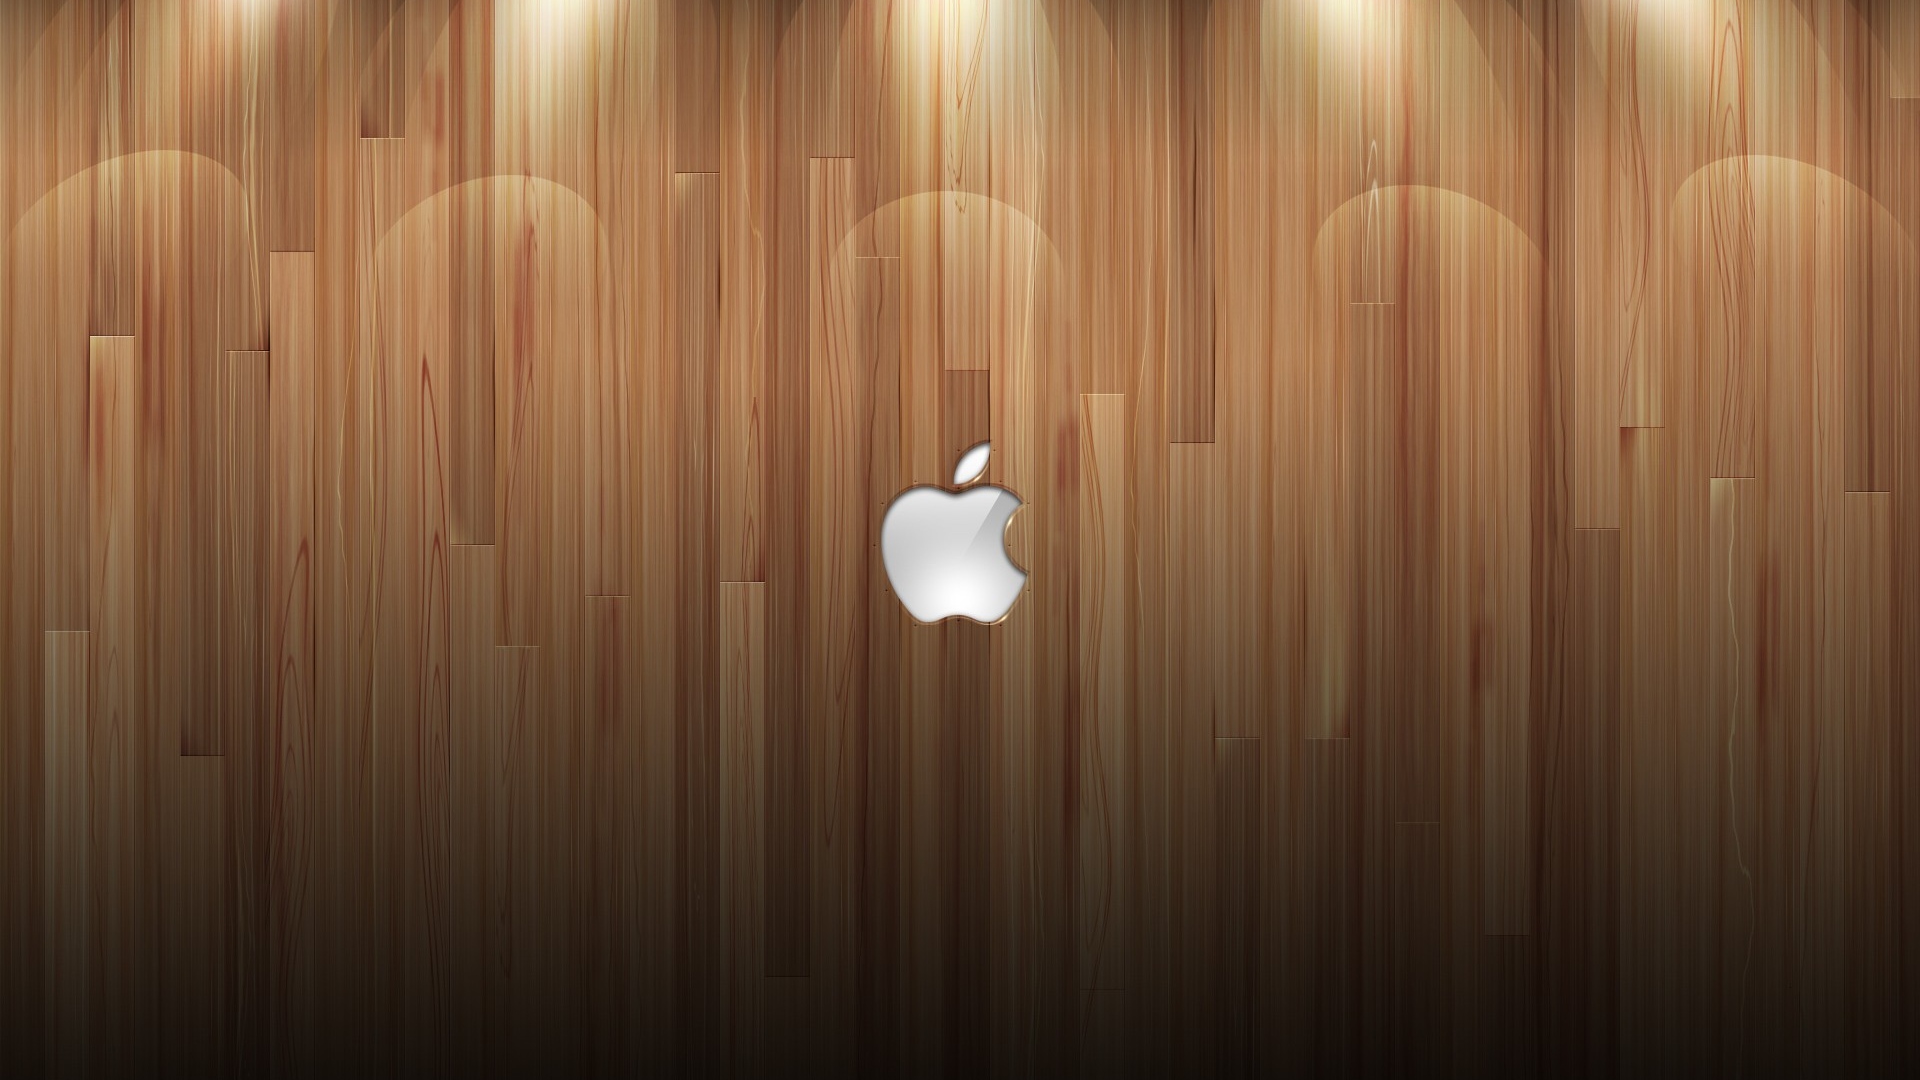 [49+] Wood Wallpapers 1080p | WallpaperSafari